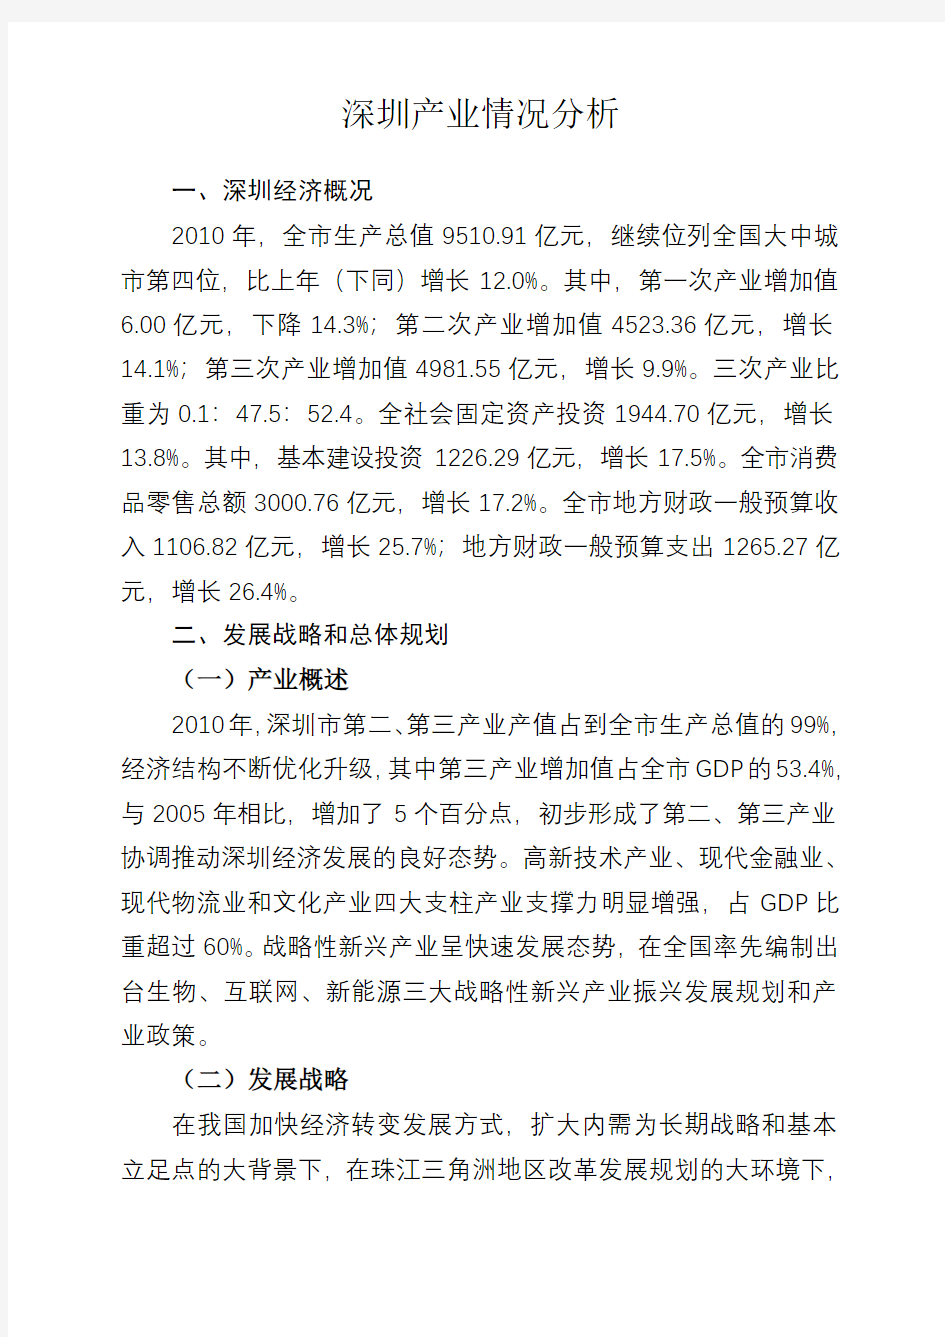 深圳产业情况分析总结报告(终稿)